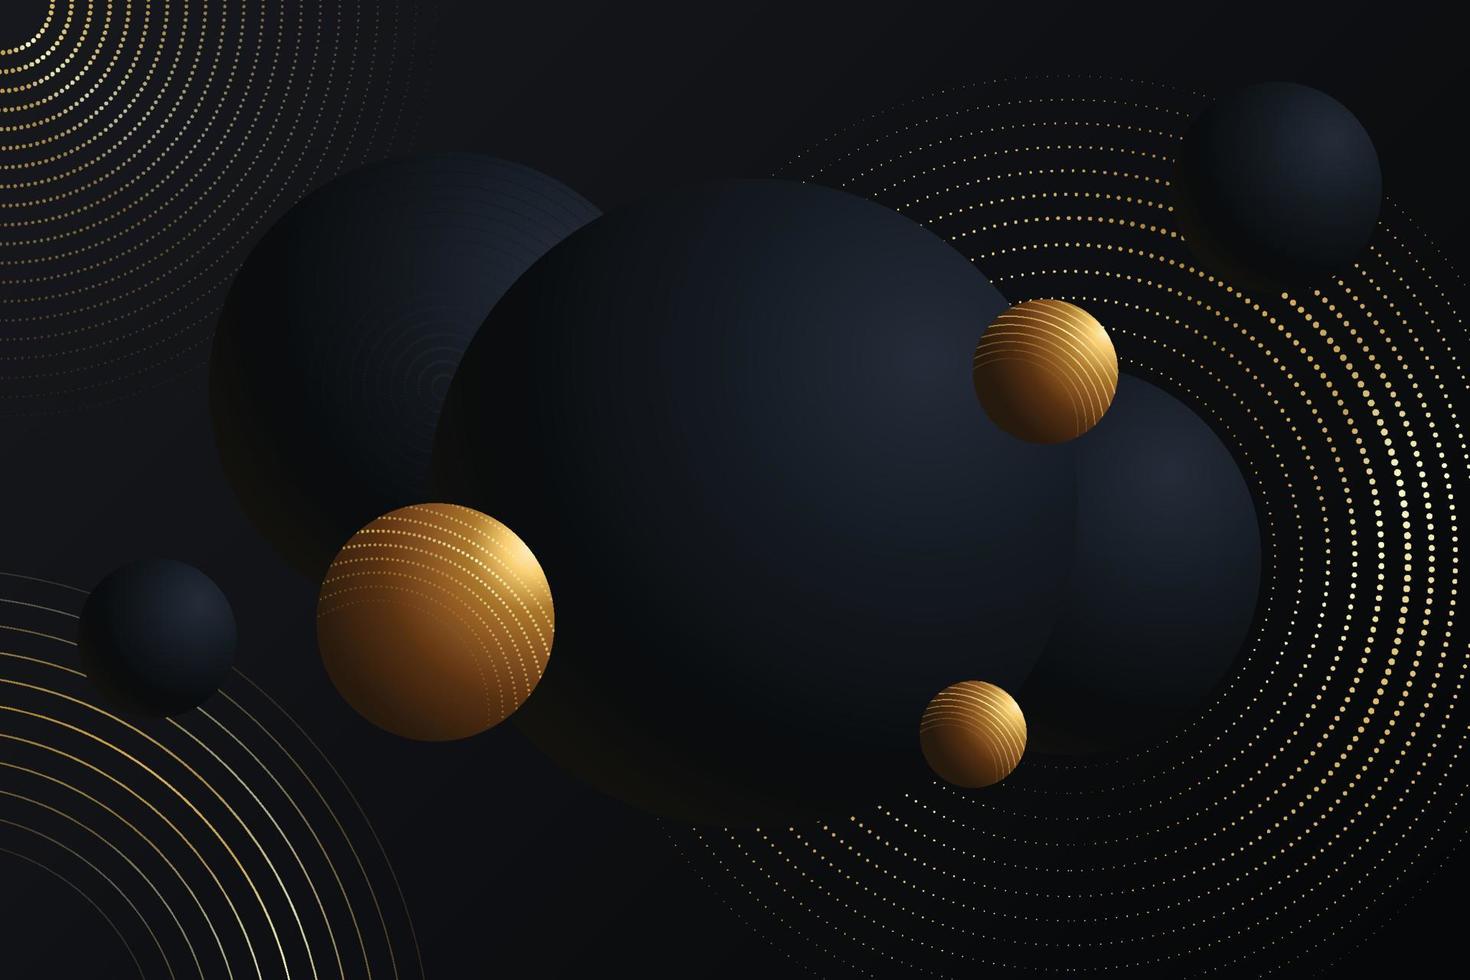 papel de parede decorativo bolas de discoteca pretas e douradas. textura de fundo criativa de vibrações de discoteca elegante vetor